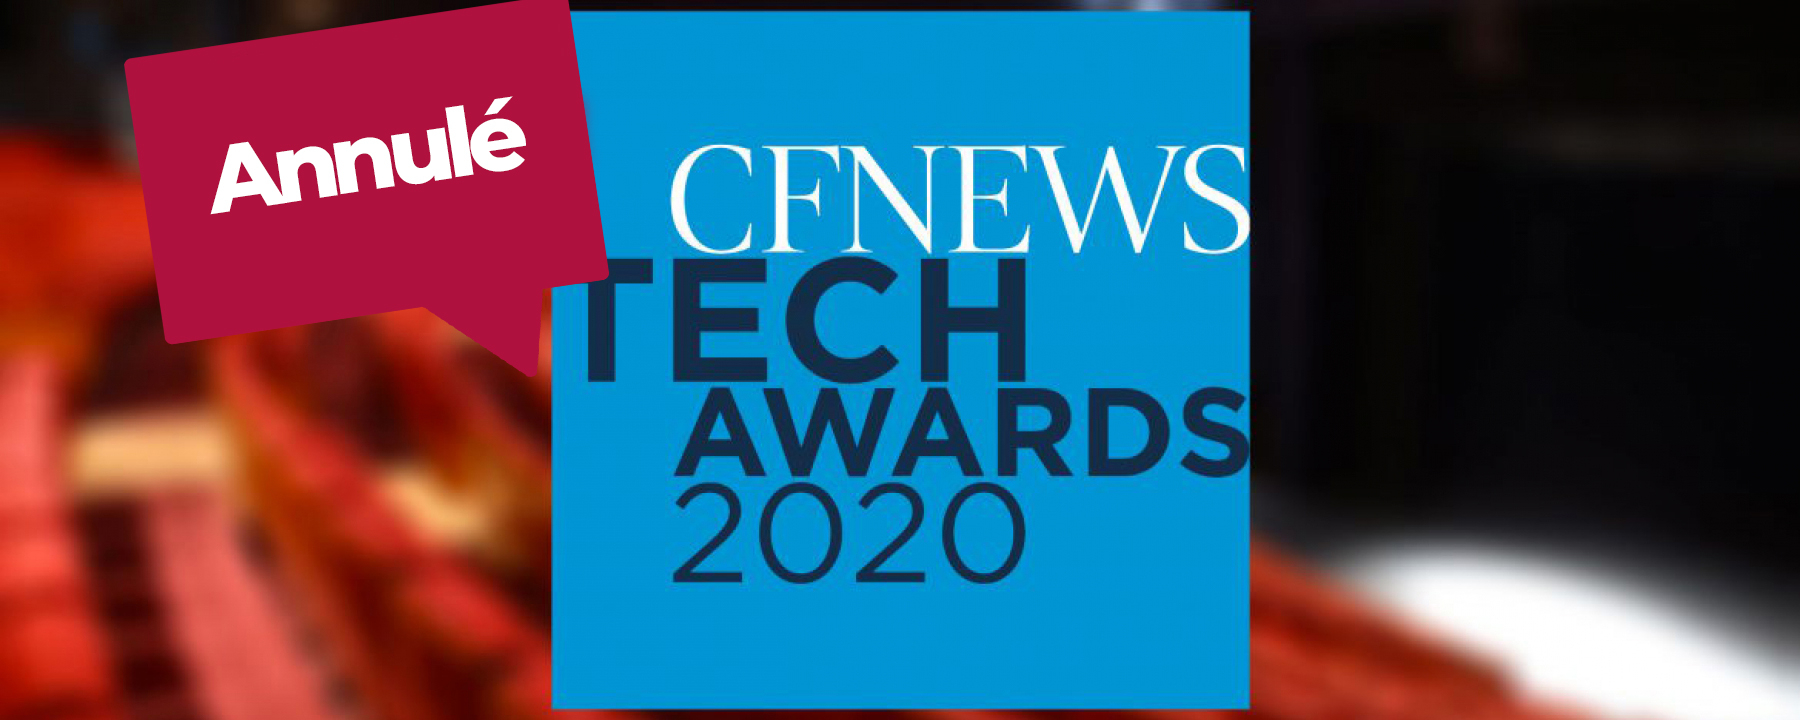 Remise de prix CF NEWS Tech Awards 2020, le 16 mars 2020 au Forum des Images Paris, organisé par CF NEWS